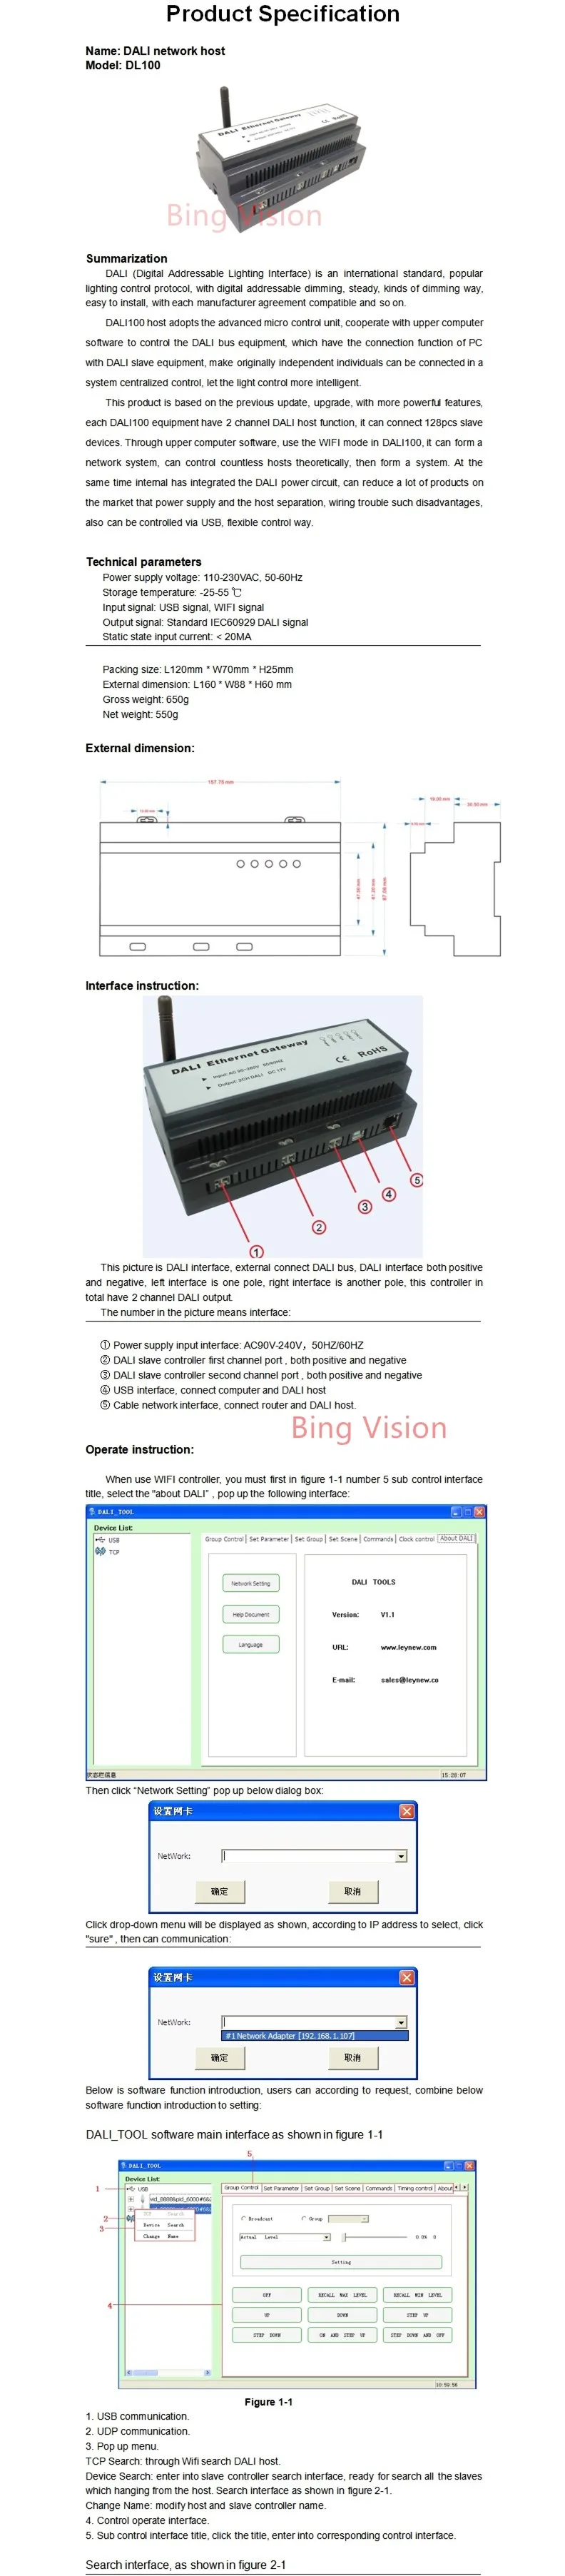 DL100+ DL810+ LN-DALIDIMMER цифровой адресный интерфейс освещения сетевой хост, USB сигнал, wifi сигнальный светодиодный контроллер